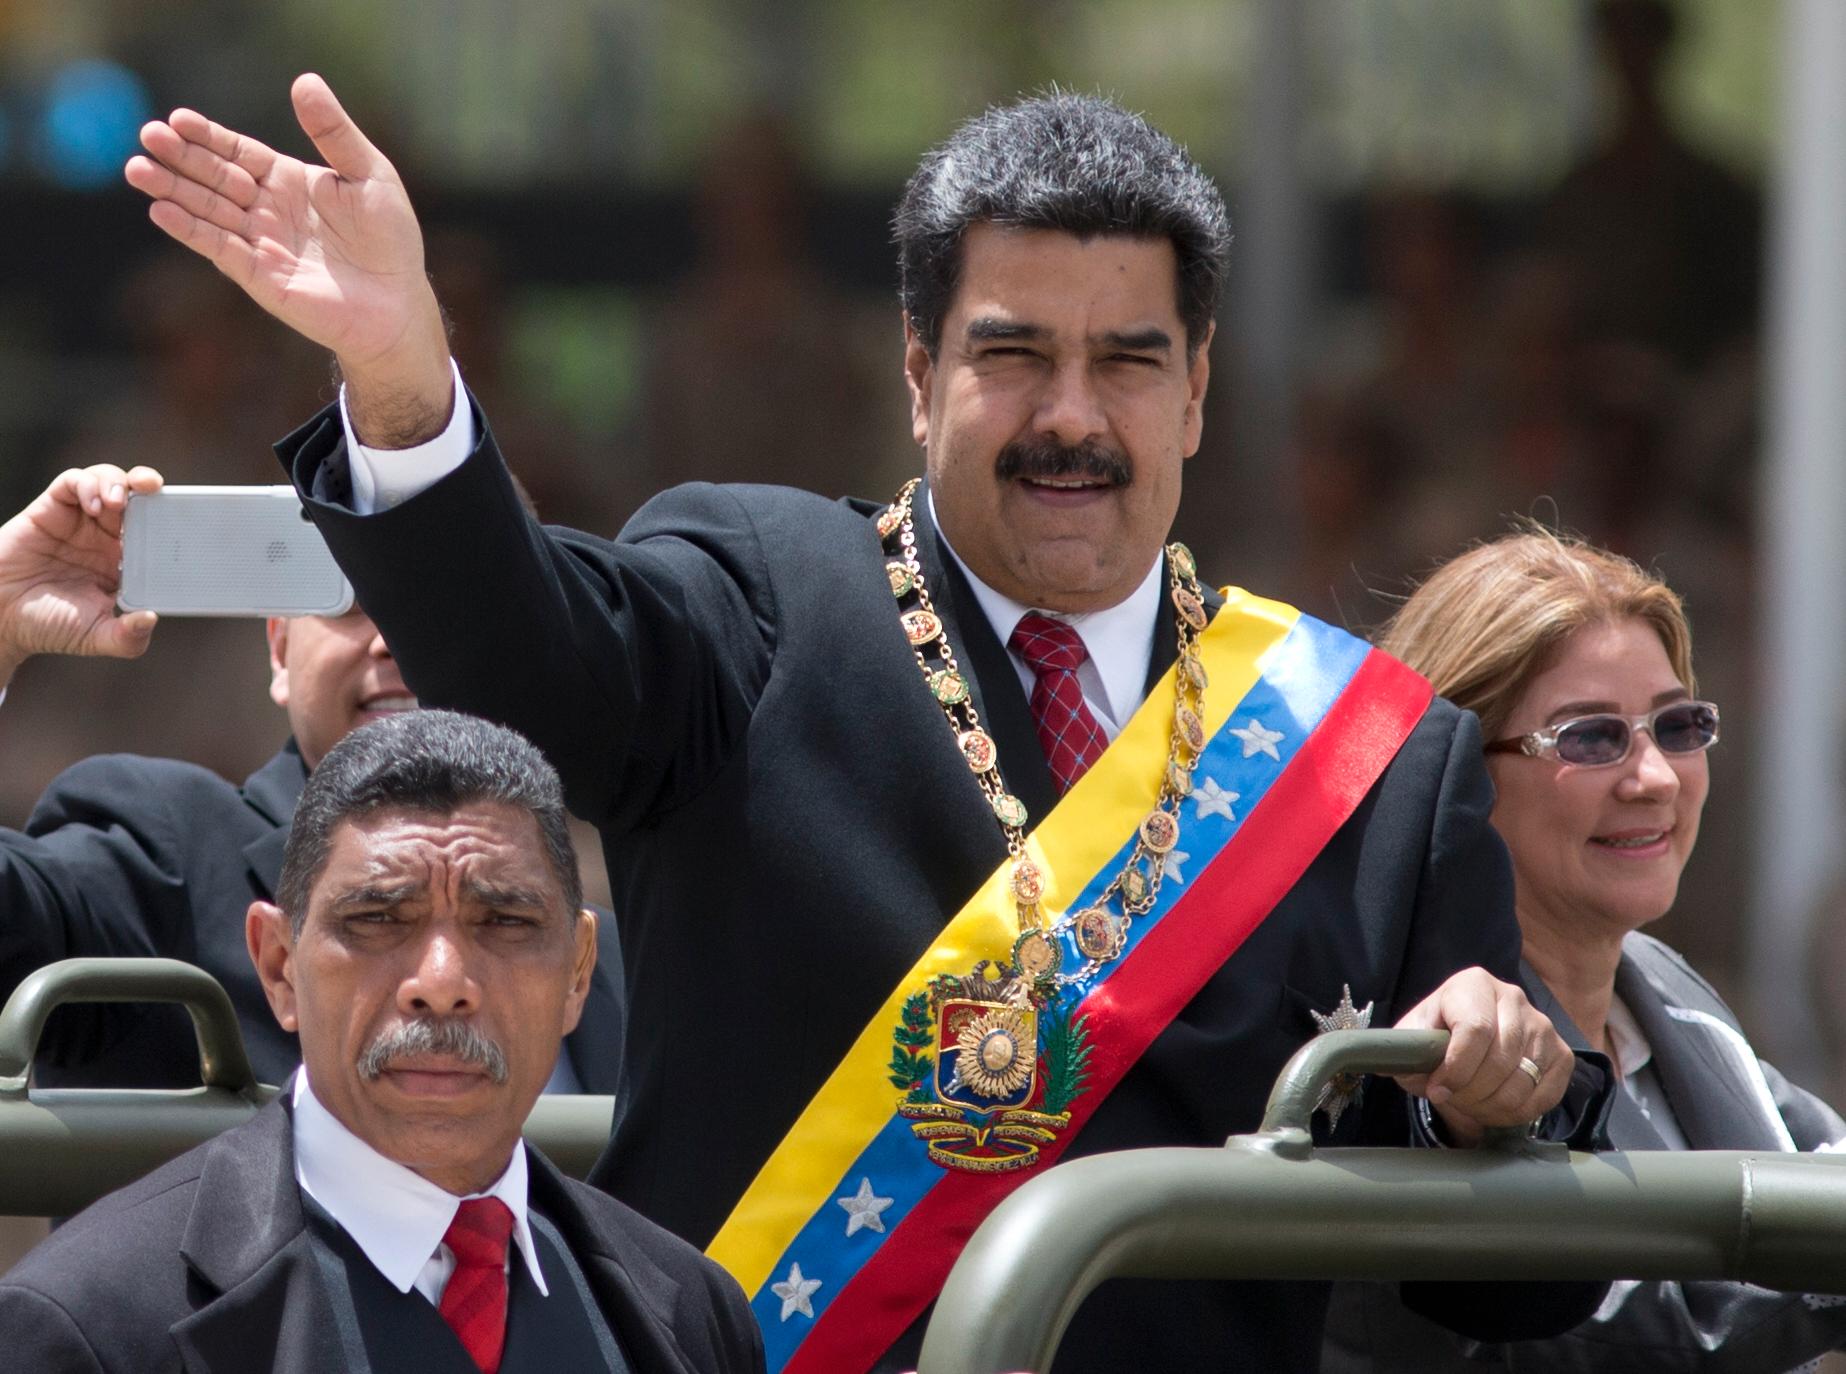 Nicolás Maduro tok over som president i 2013 etter   at Hugo Chávez, som hadde styrt Venezuela i lang tid, døde.